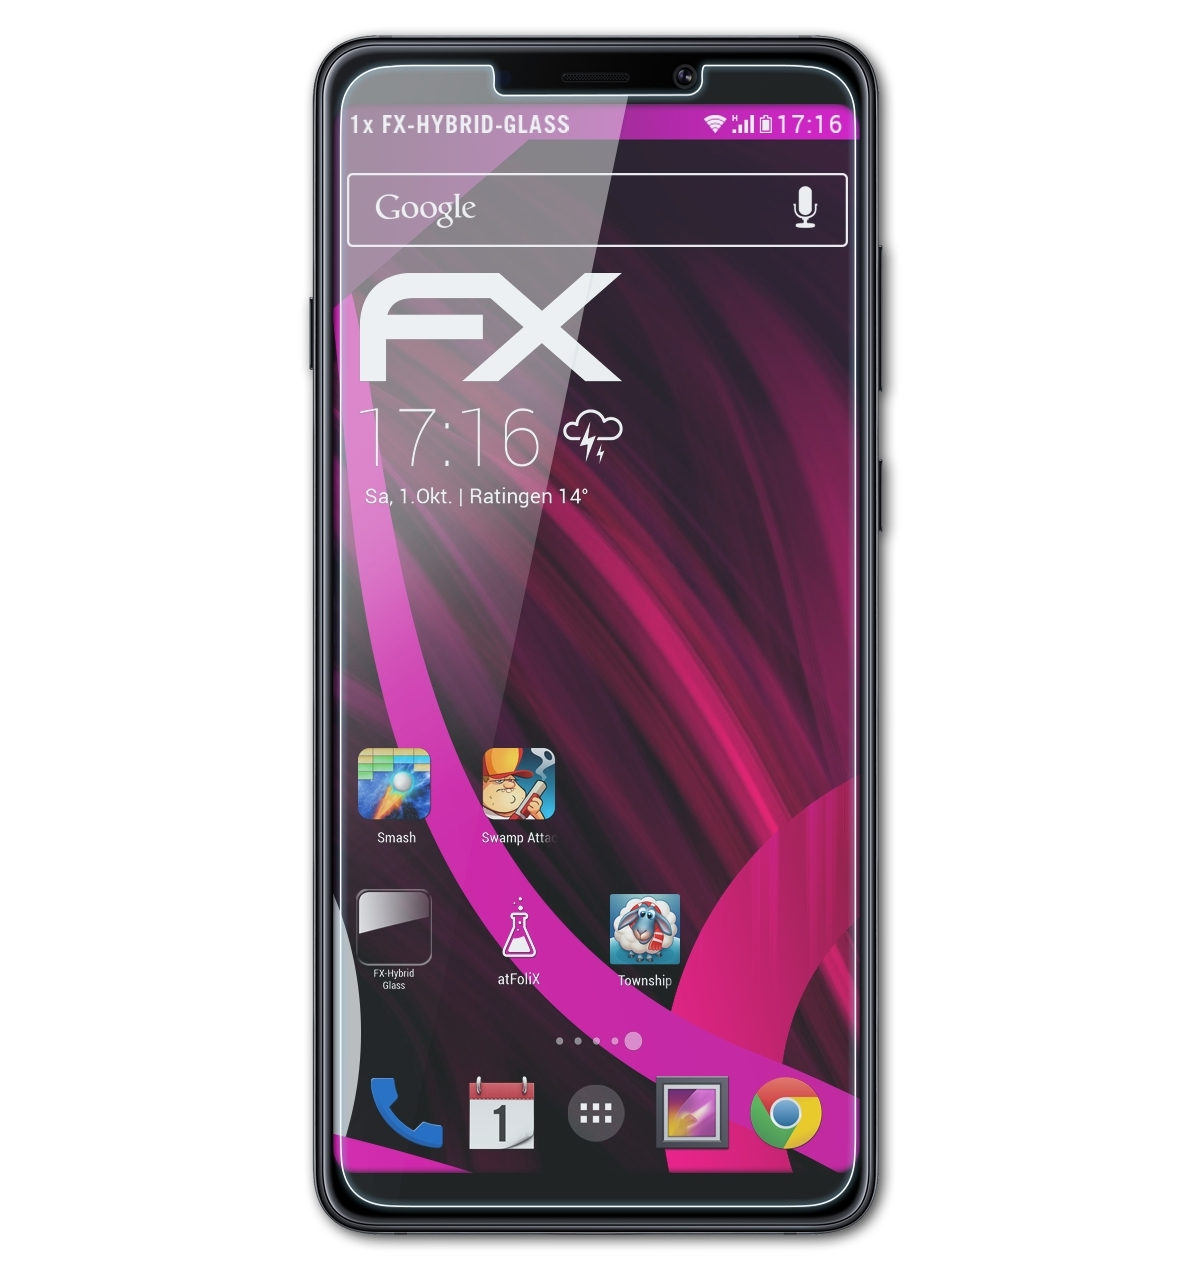 Samsung (2018)) FX-Hybrid-Glass A9 Galaxy ATFOLIX Schutzglas(für